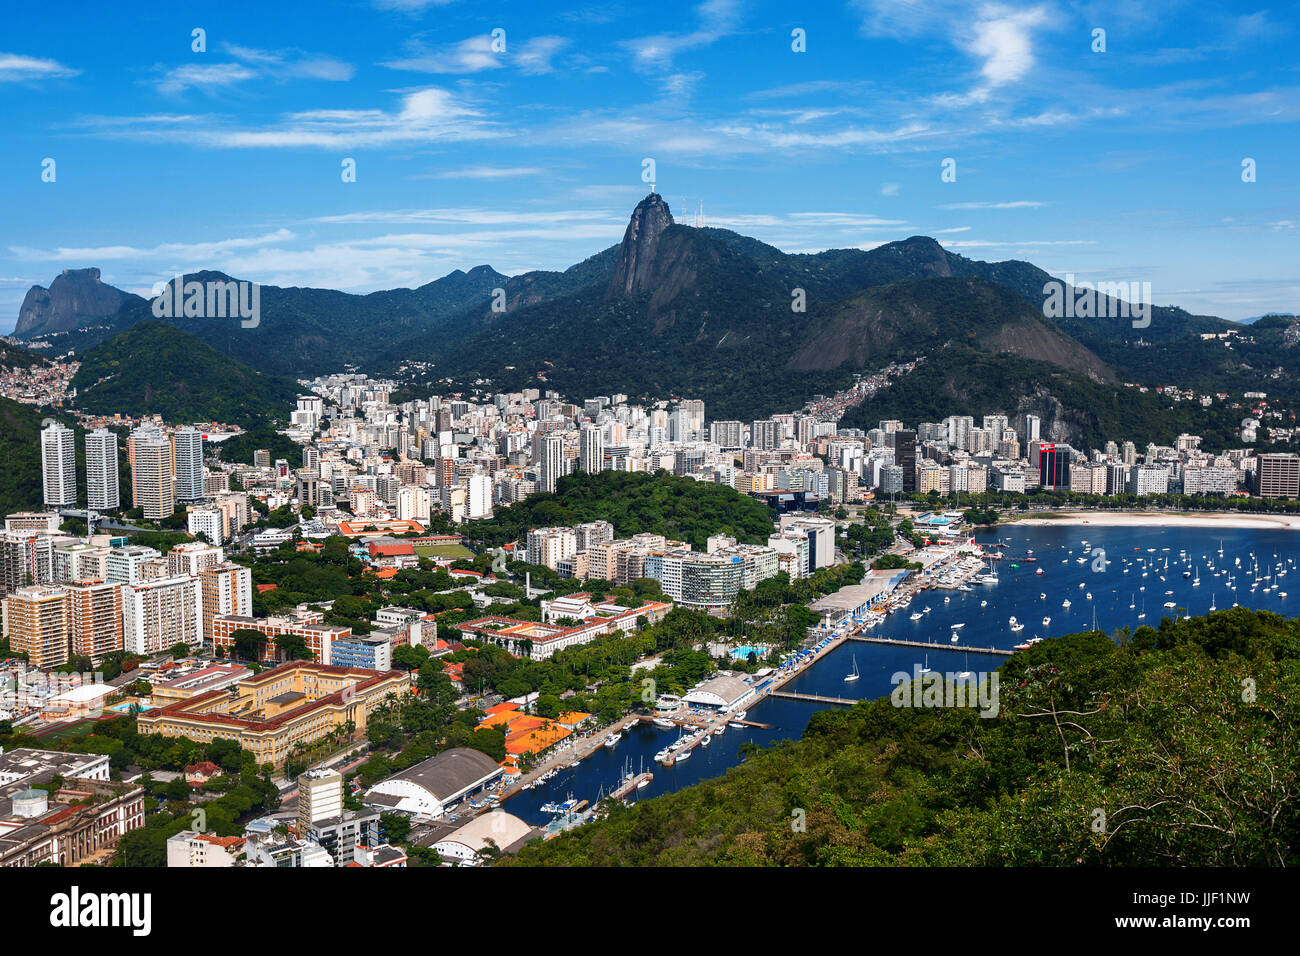 Aerial View of Corcovado Mountain and Rio de Janeiro, Brazil Stock Photo